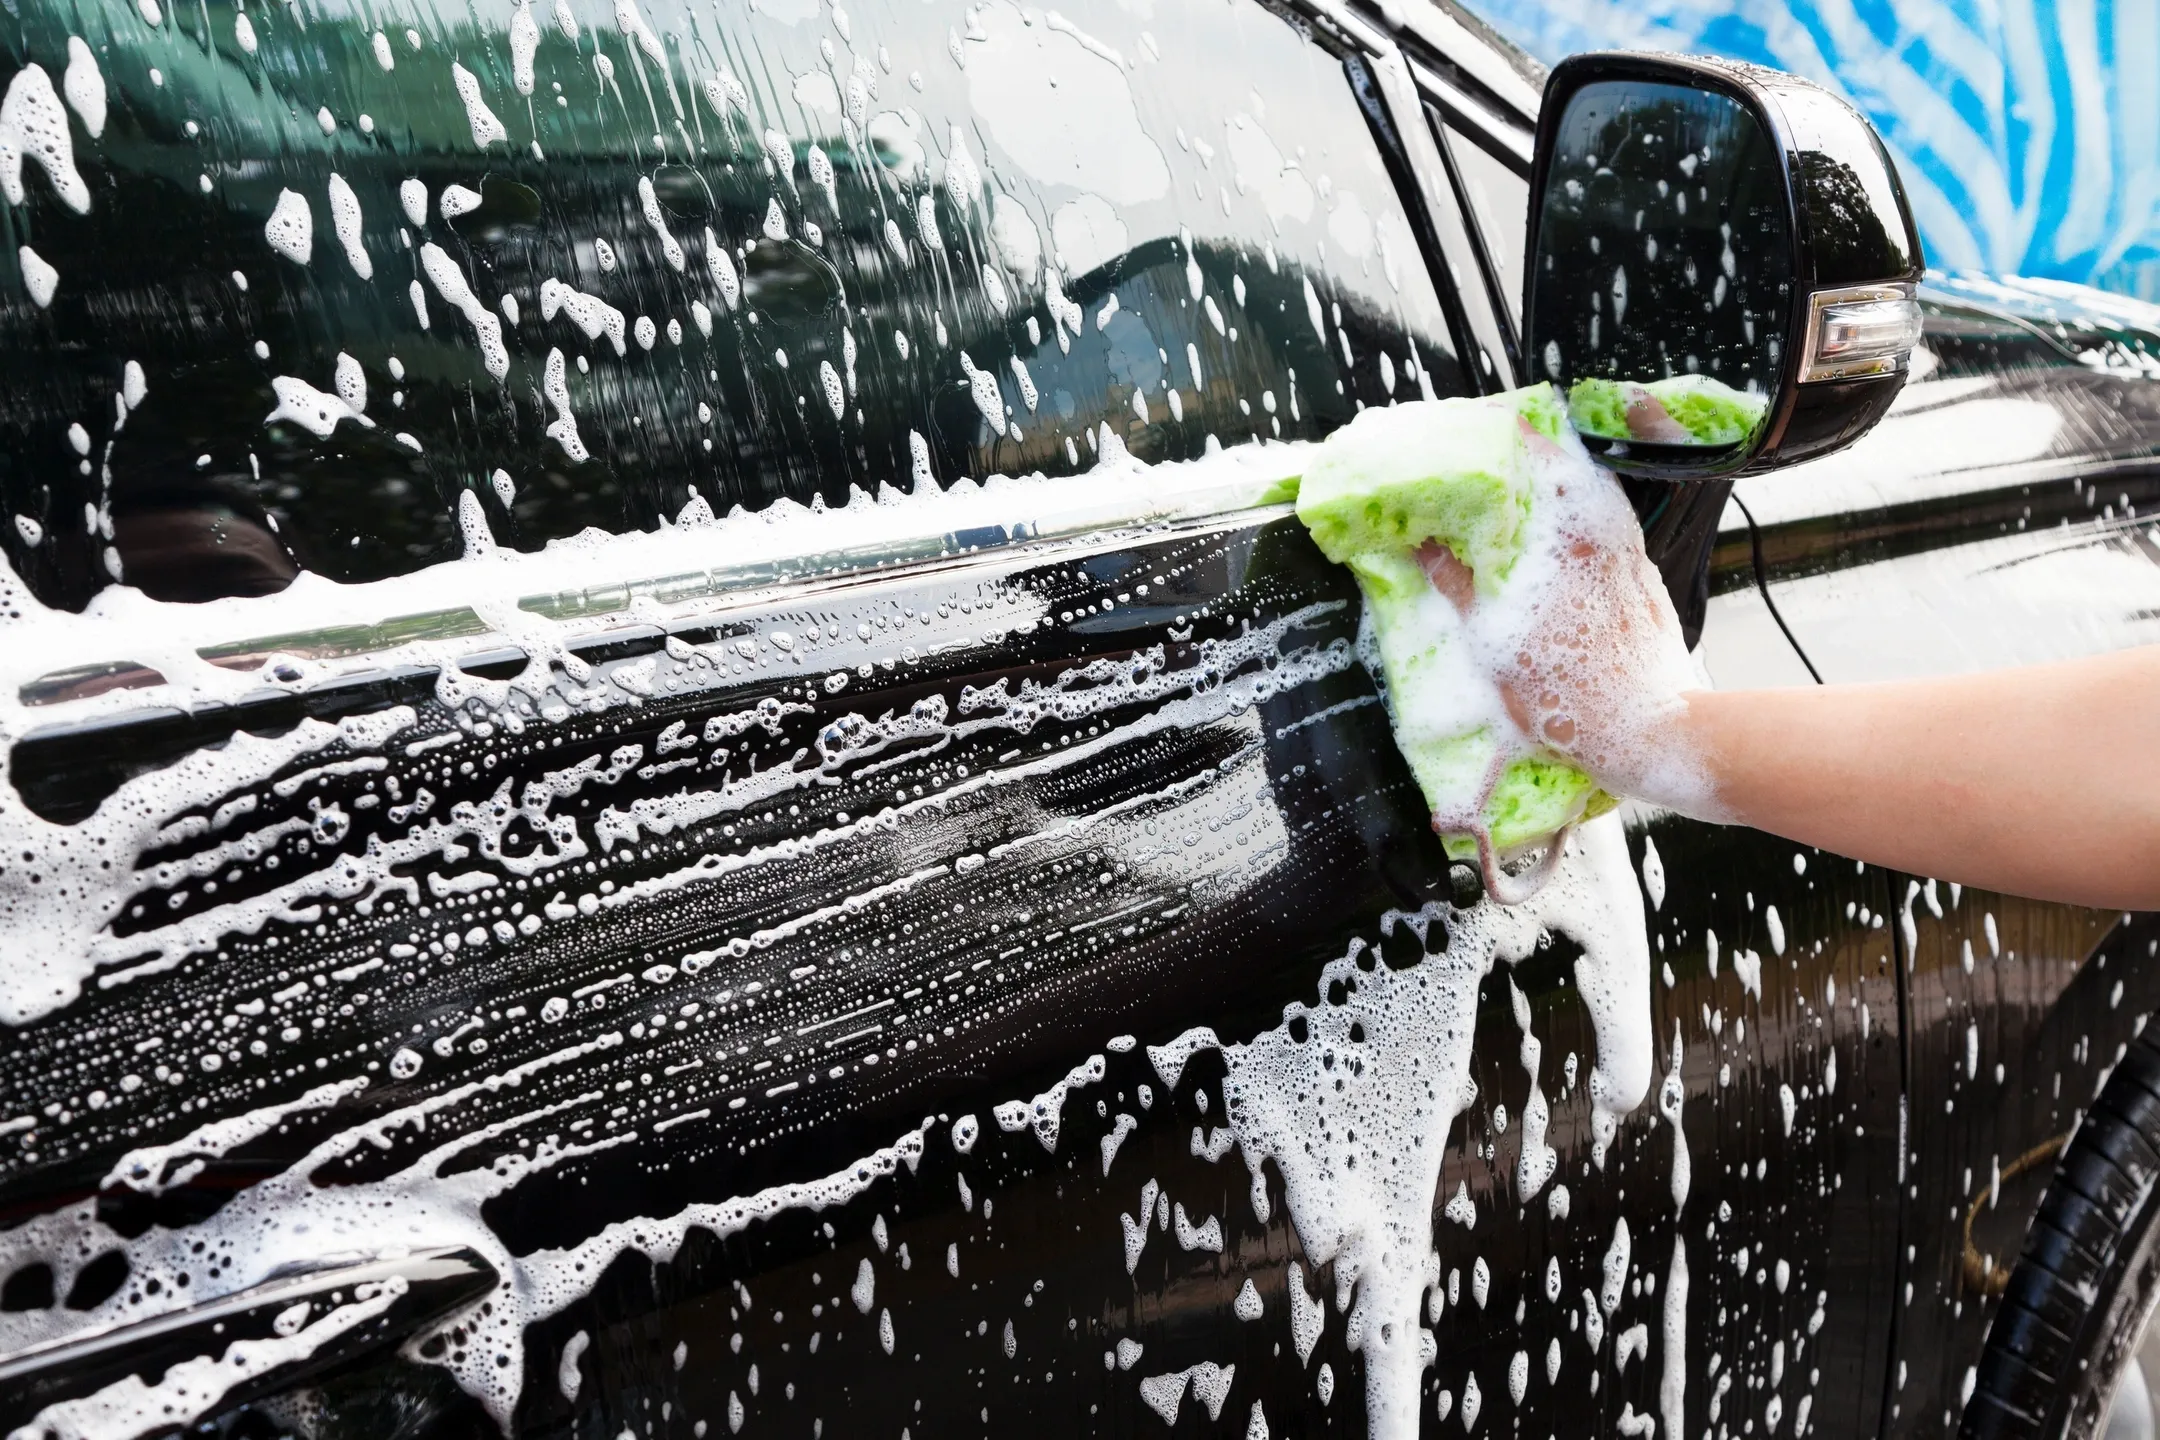 Hand Car Wash